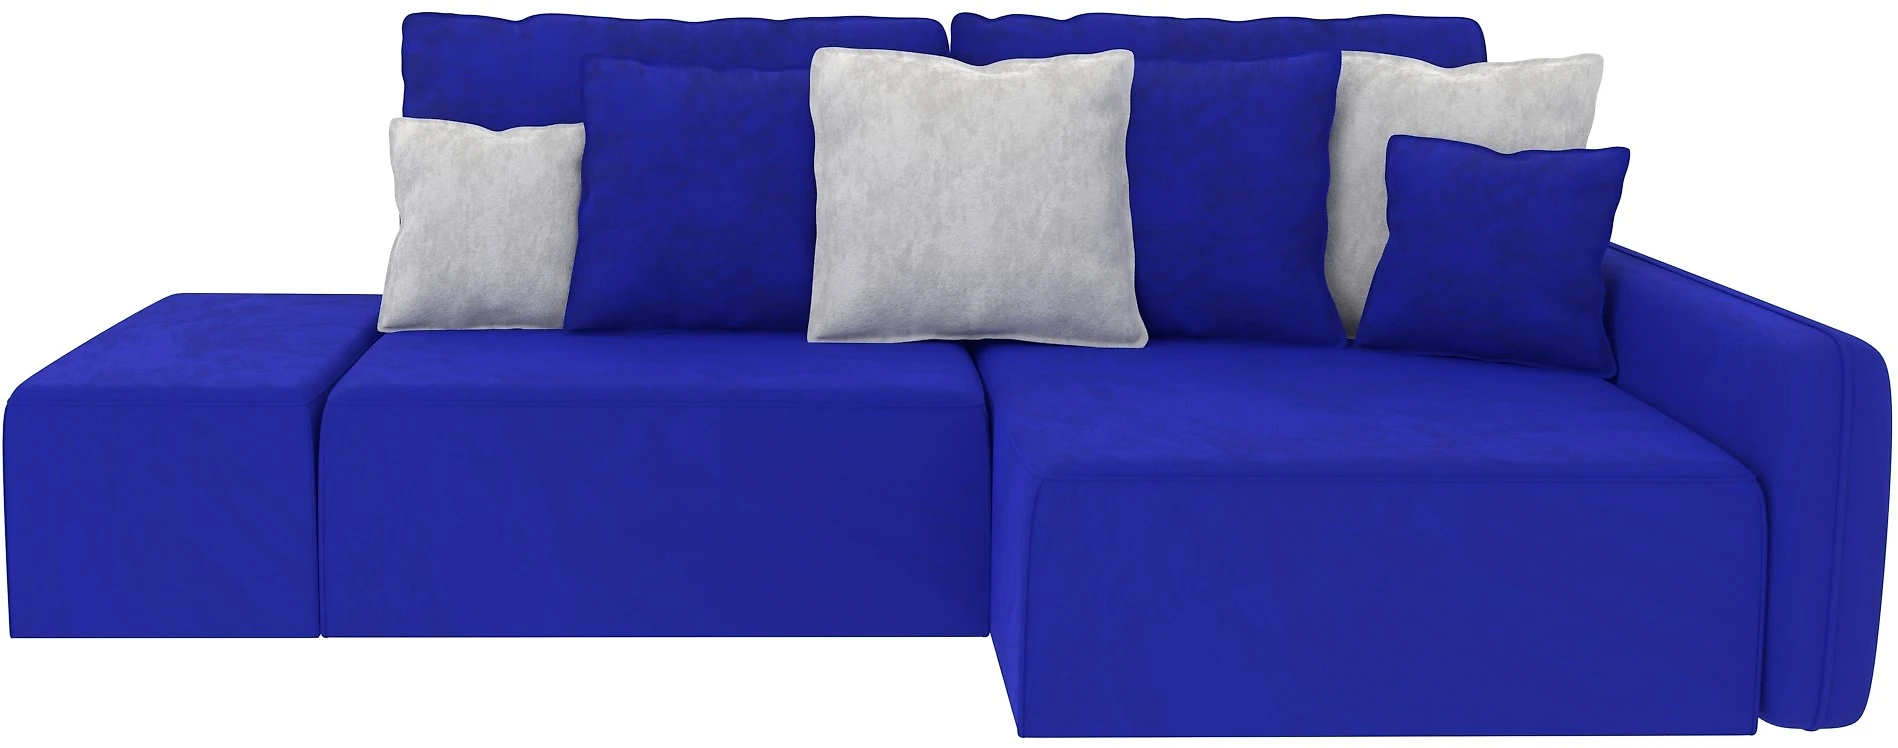 Синий диван еврокнижка Портленд Дизайн 6